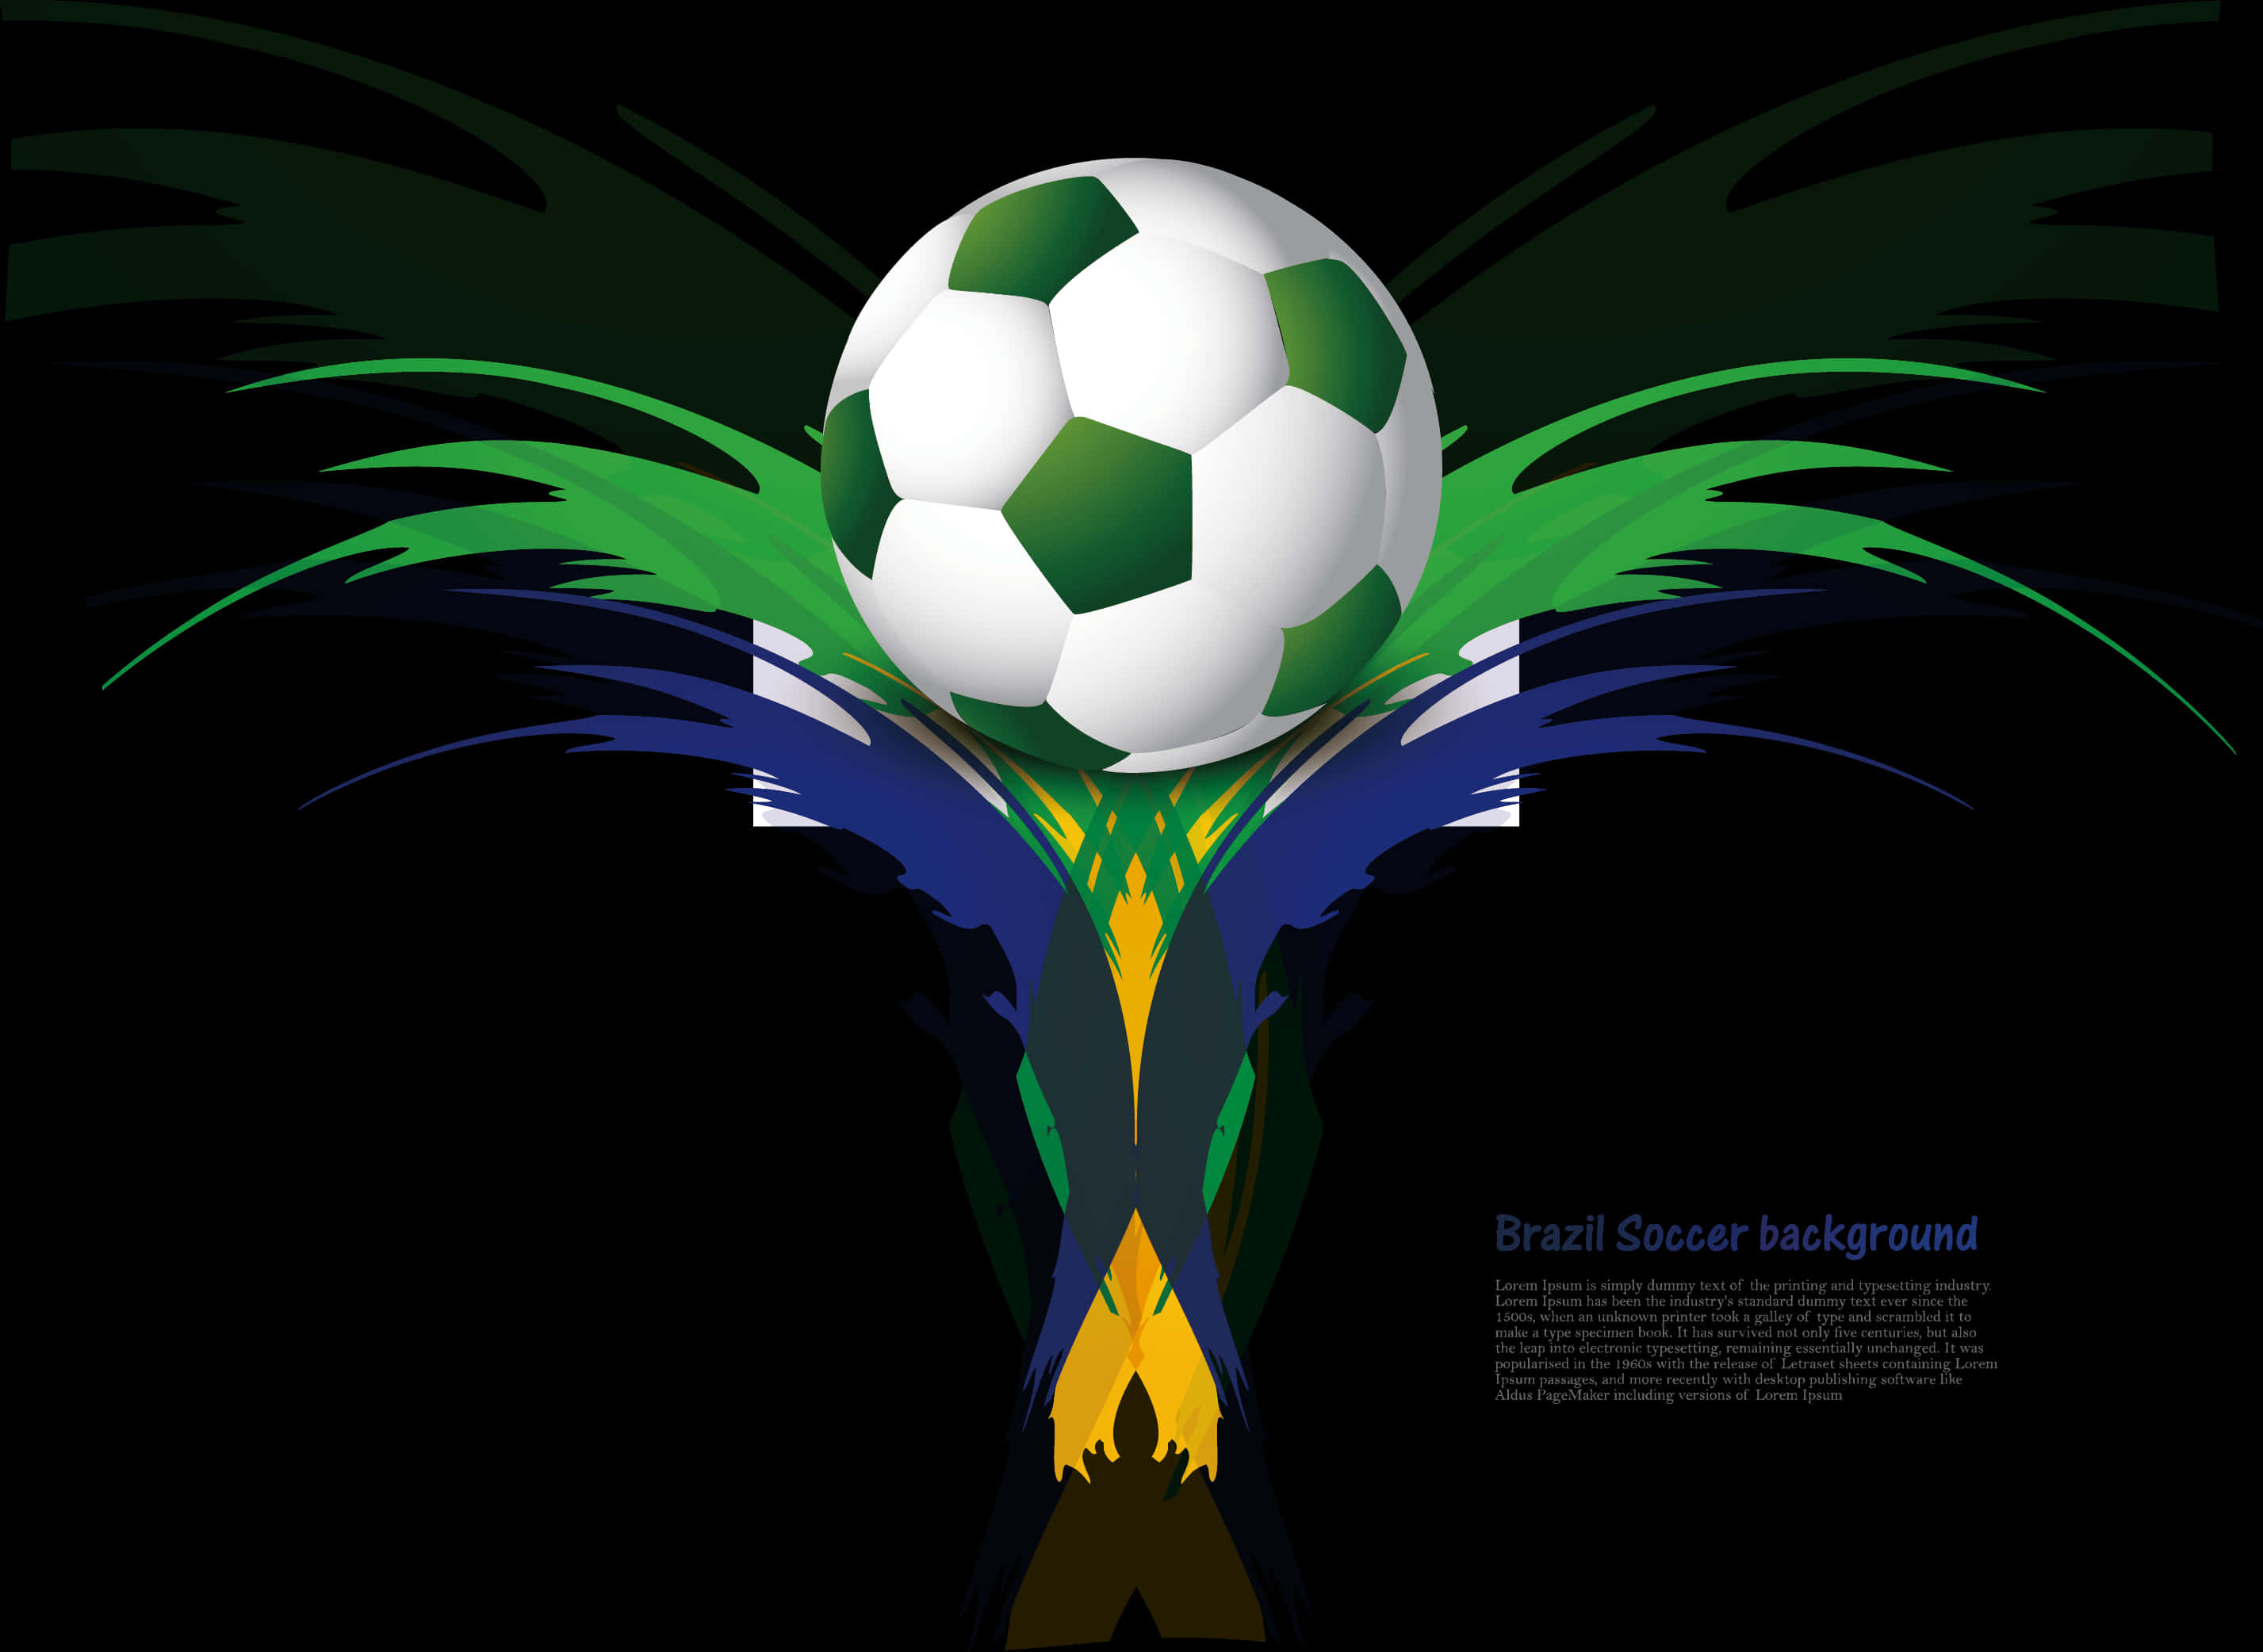 Brazil Soccer Background Illustration PNG image